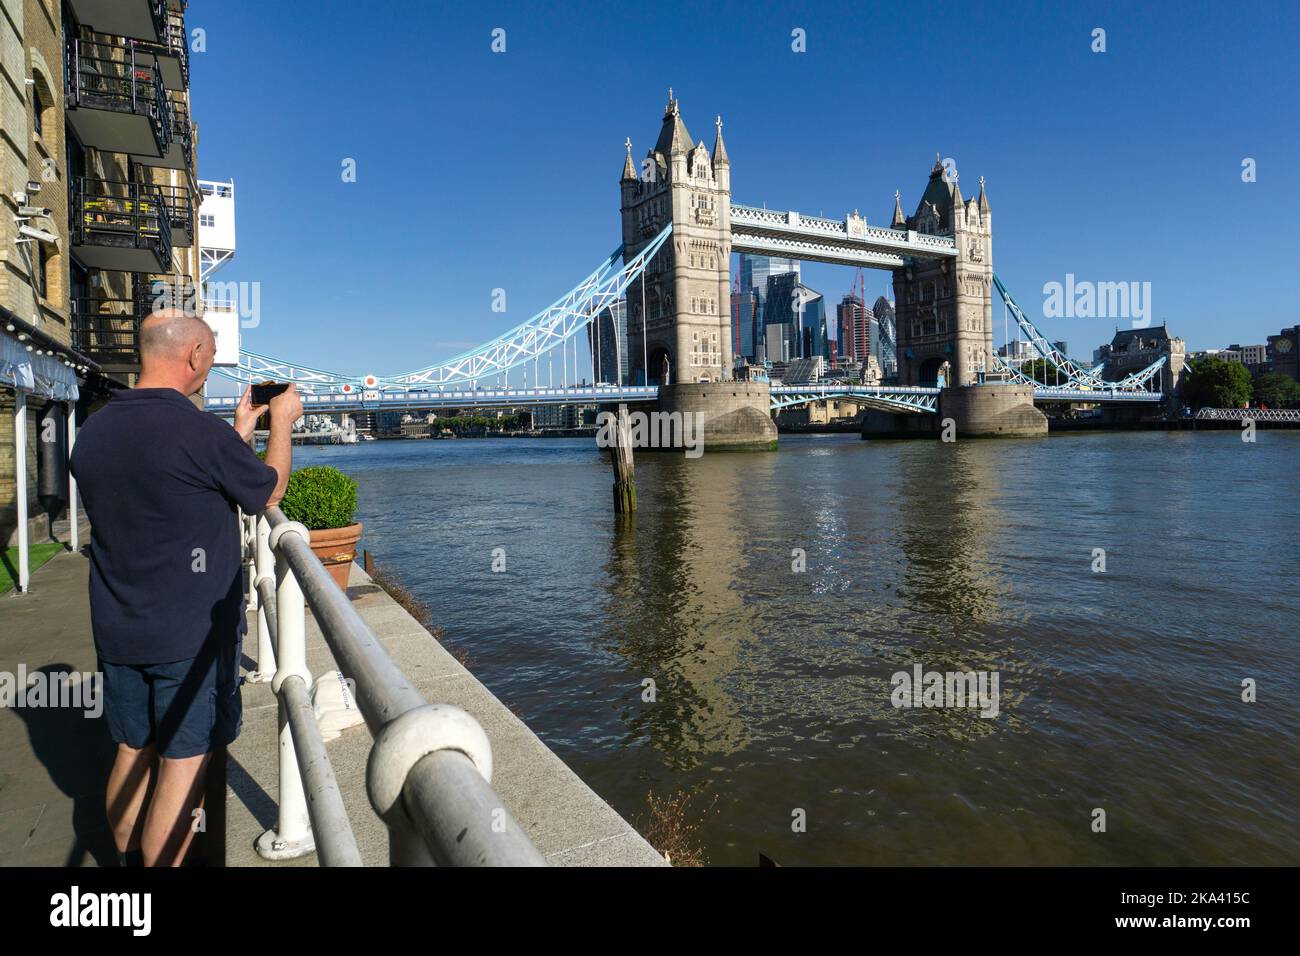 Vue arrière d'un homme photographiant Tower Bridge depuis Butler's Wharf, Londres, Angleterre, Royaume-Uni Banque D'Images